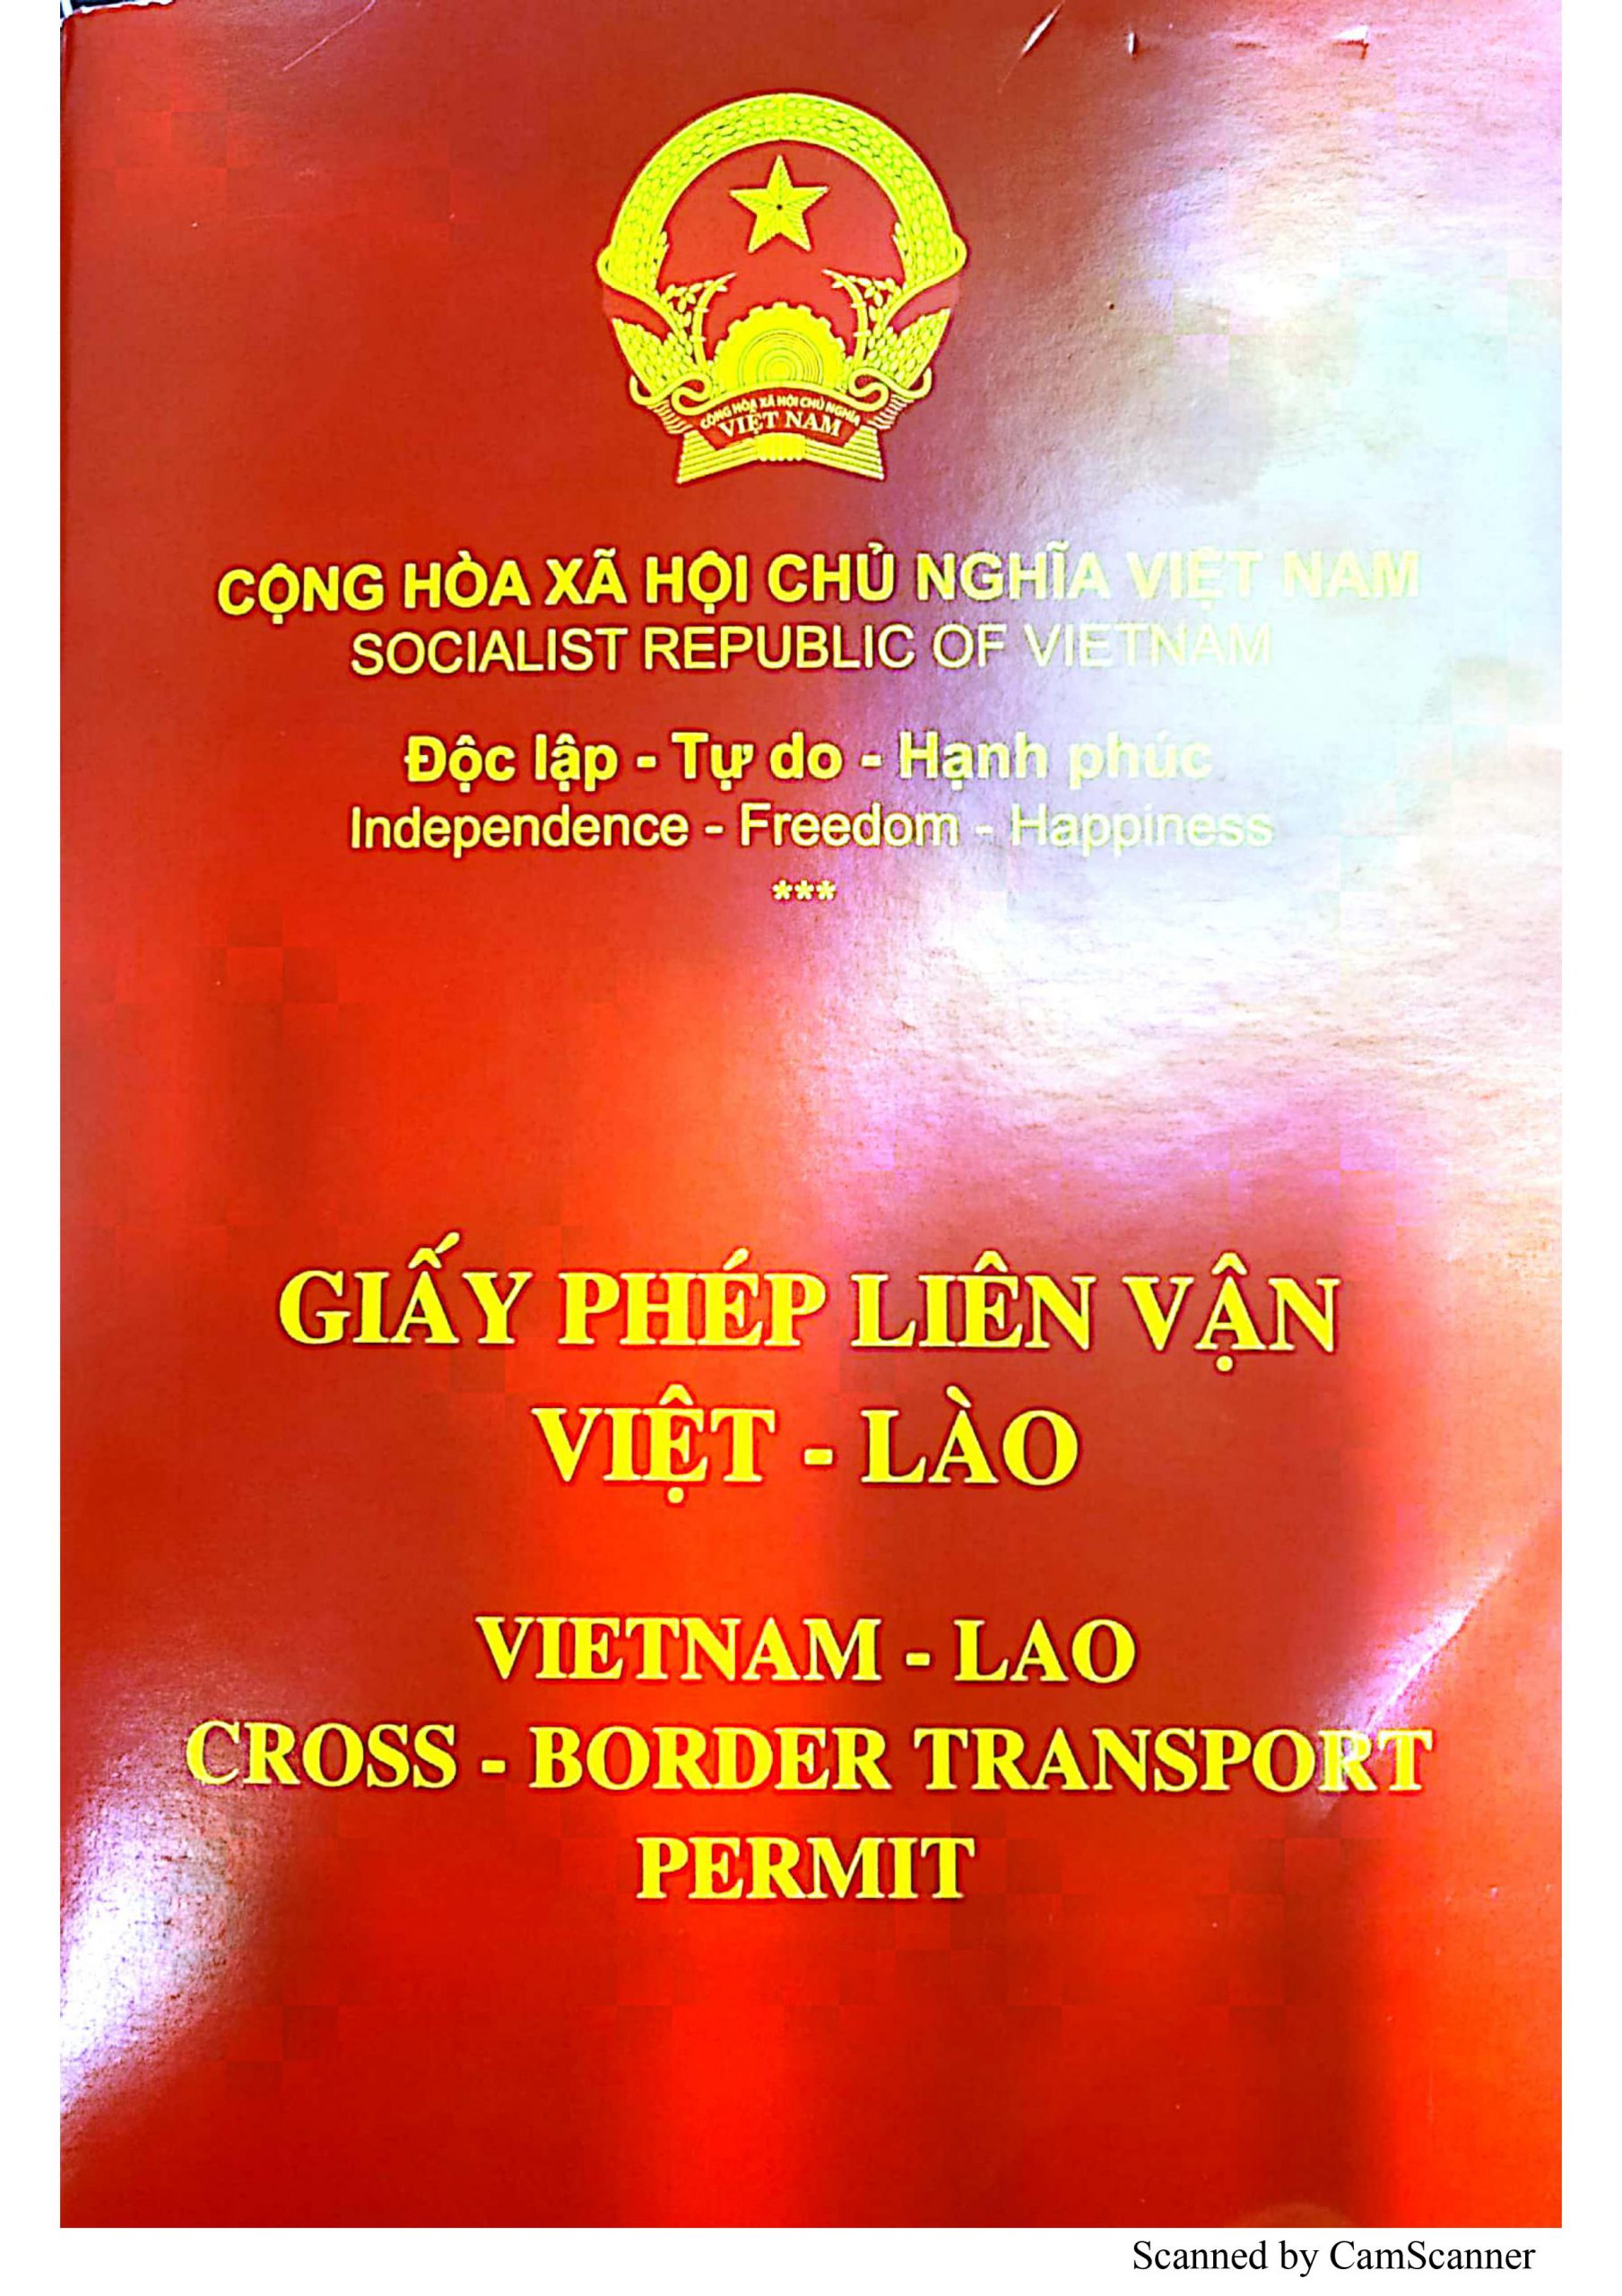 Thủ tục cấp Giấy phép Liên vận Việt Lào